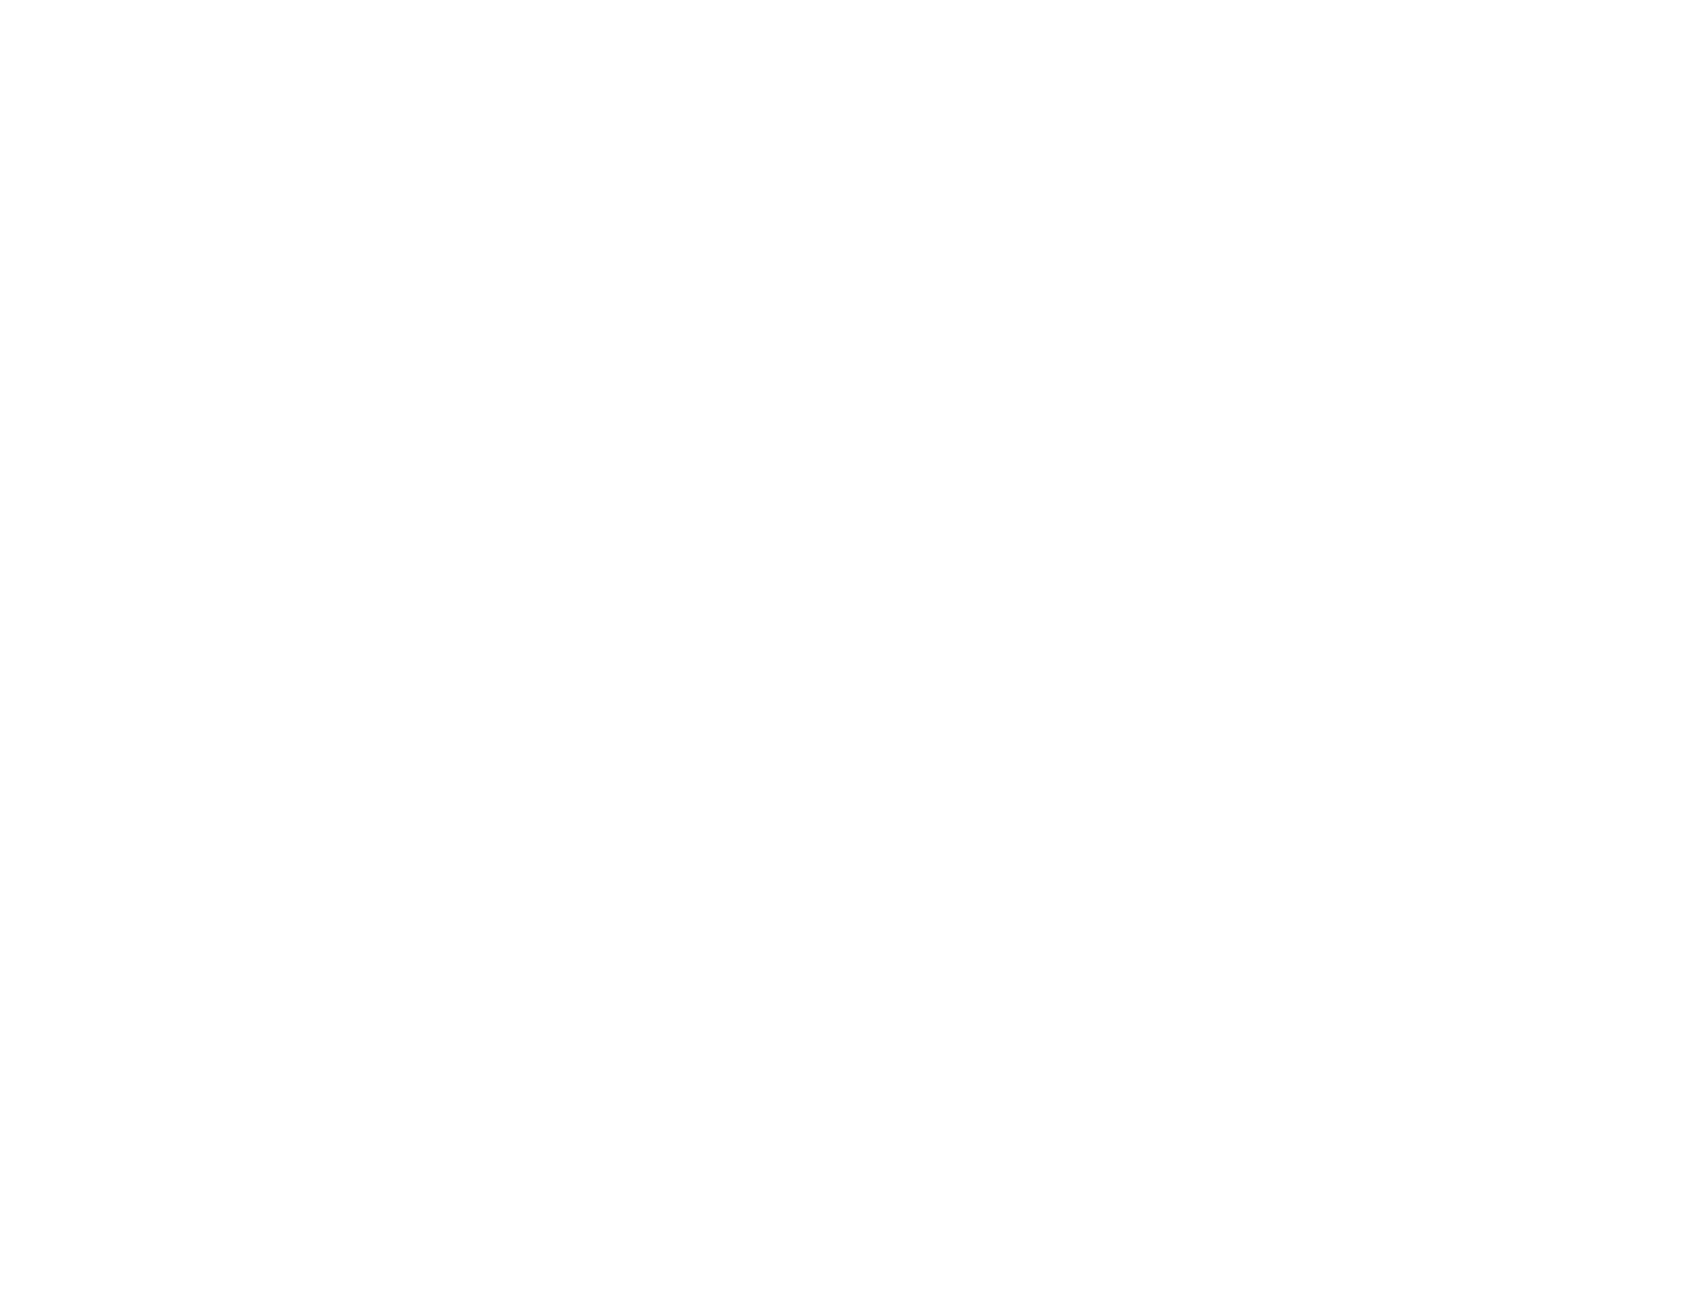 Kilians Chor